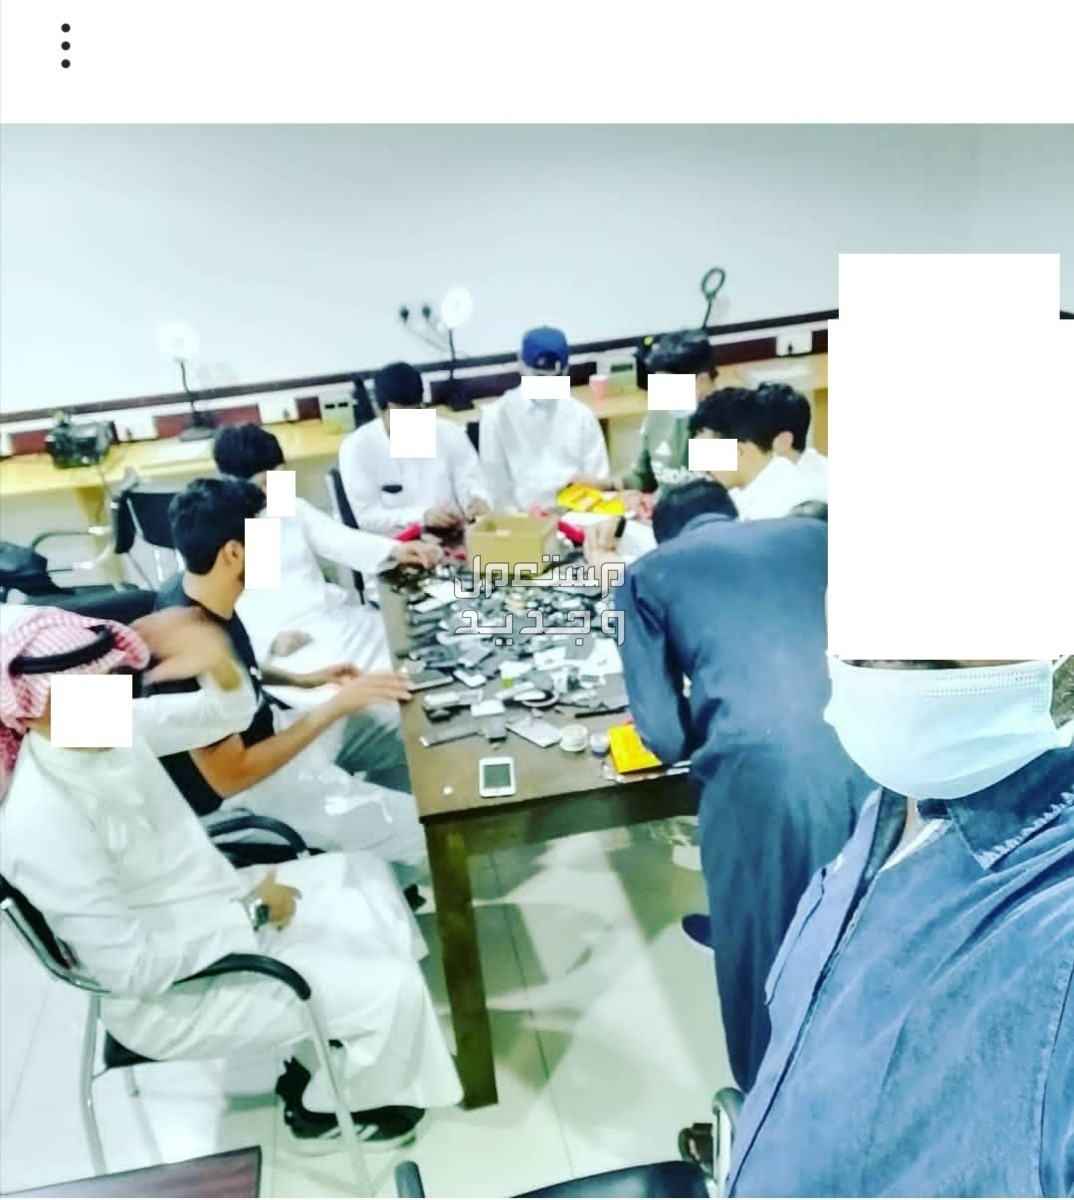 دورة محترف صيانة الجوالات مدربين خبراء لأكثر من 15 عام في الرياض